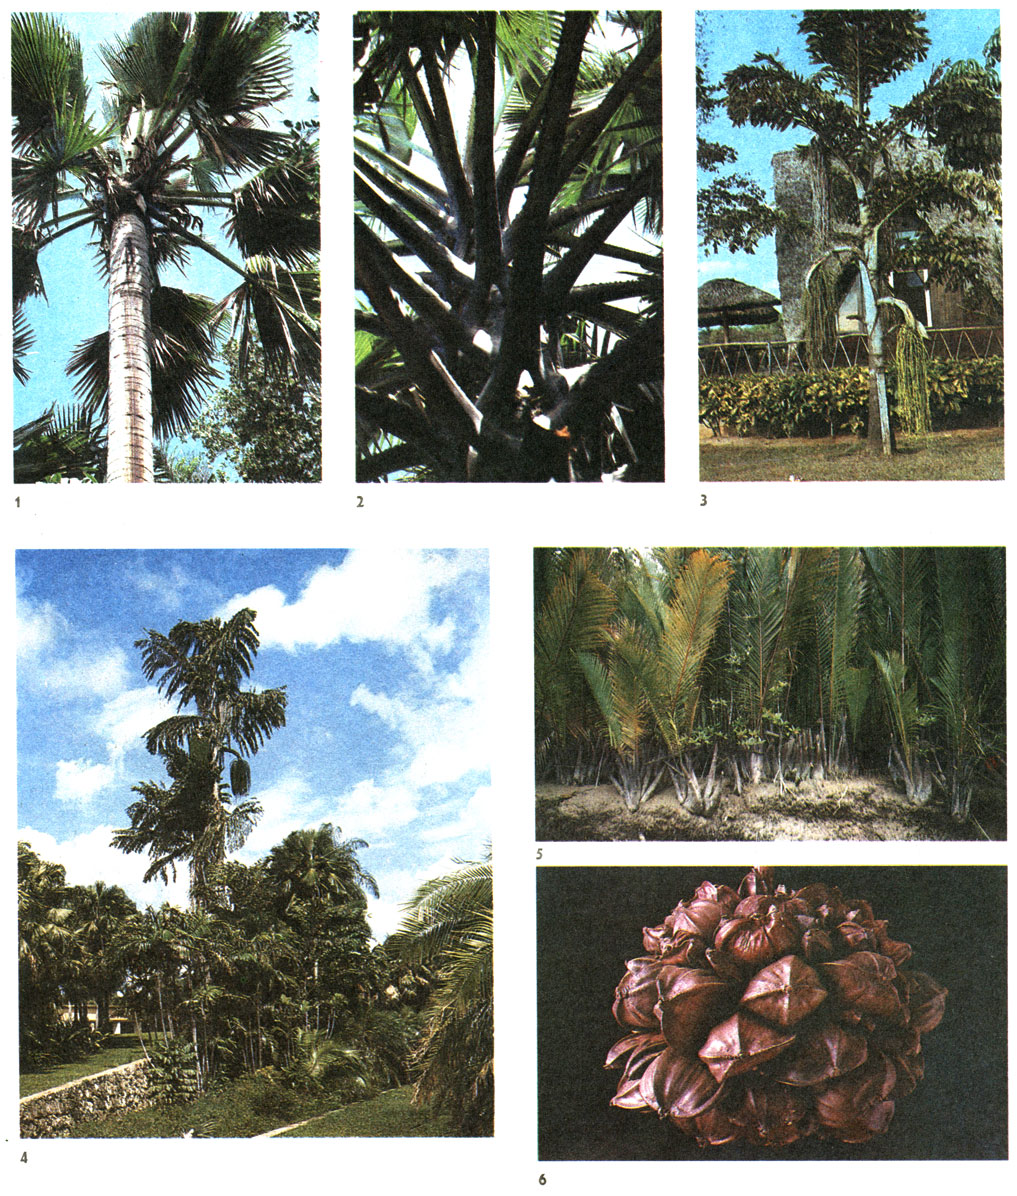 Таблица 55. Пальмы: 1 - пальмира (Borassus flabellifer), мужское растение, Тропический сад Феерчайлда, Южная Флорида, США; 2 - пальмира, там же; 3 - кариота жгучая, винная пальма (Caryota urens), Куба; 4 - кариота жгучая, винная пальма, Тропический сад Феерчайлда, Южная Флорида, США; 5 - нипа кустистая, мангровая пальма (Nypa fruticans), Саравак; 6 - нипа кустистая, мангровая пальма, плоды, порт Маданг